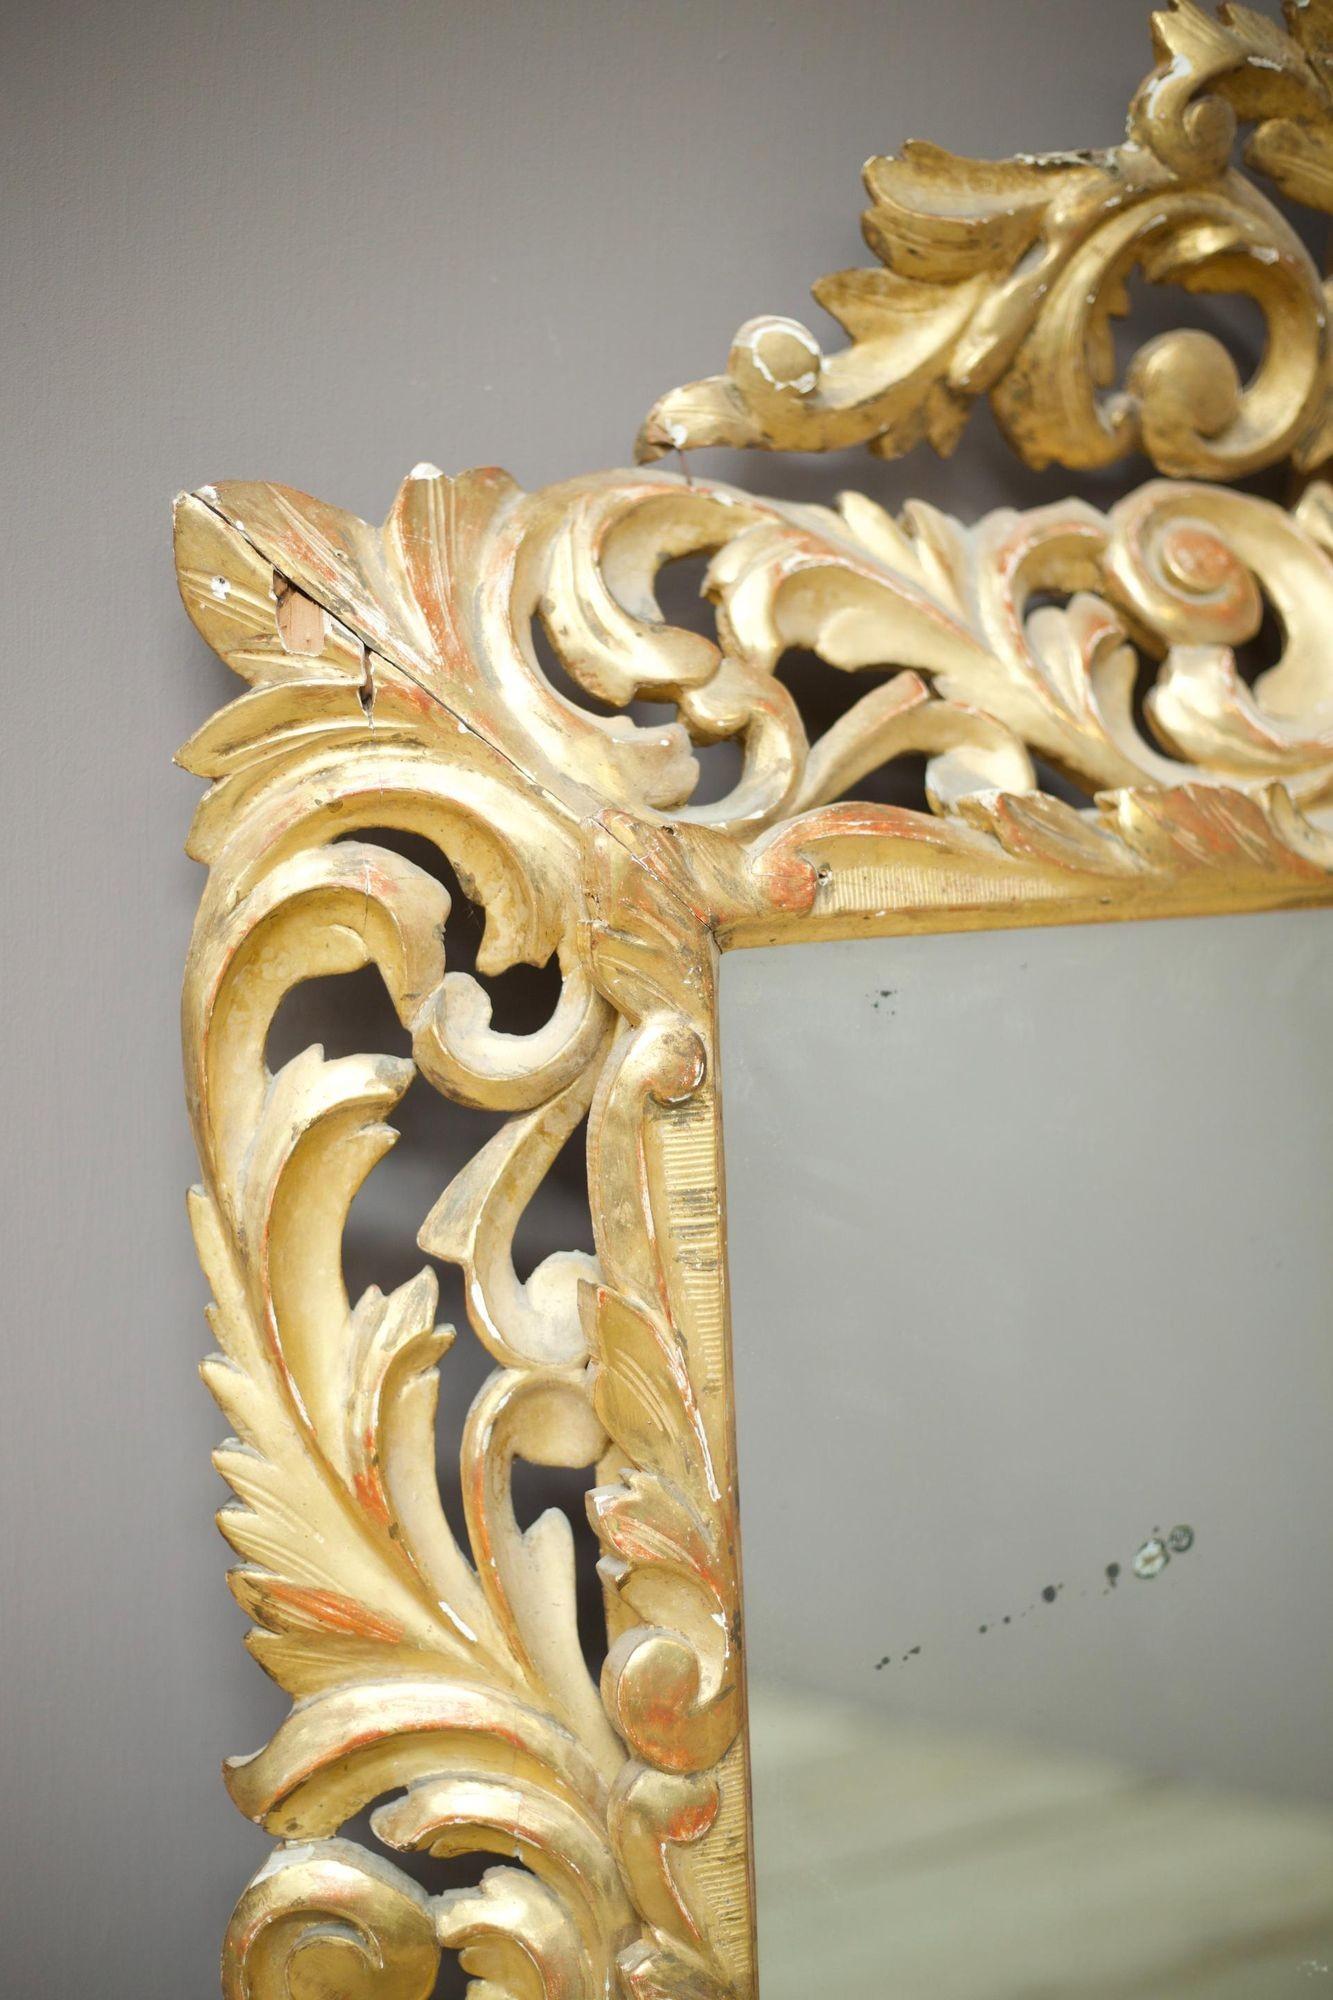 Il s'agit d'un exceptionnel miroir italien en bois doré du début du XIXe siècle, en très bon état général compte tenu de sa nature fragile. Ce miroir est d'une taille impressionnante et présente une plaque de miroir très propre avec de légères